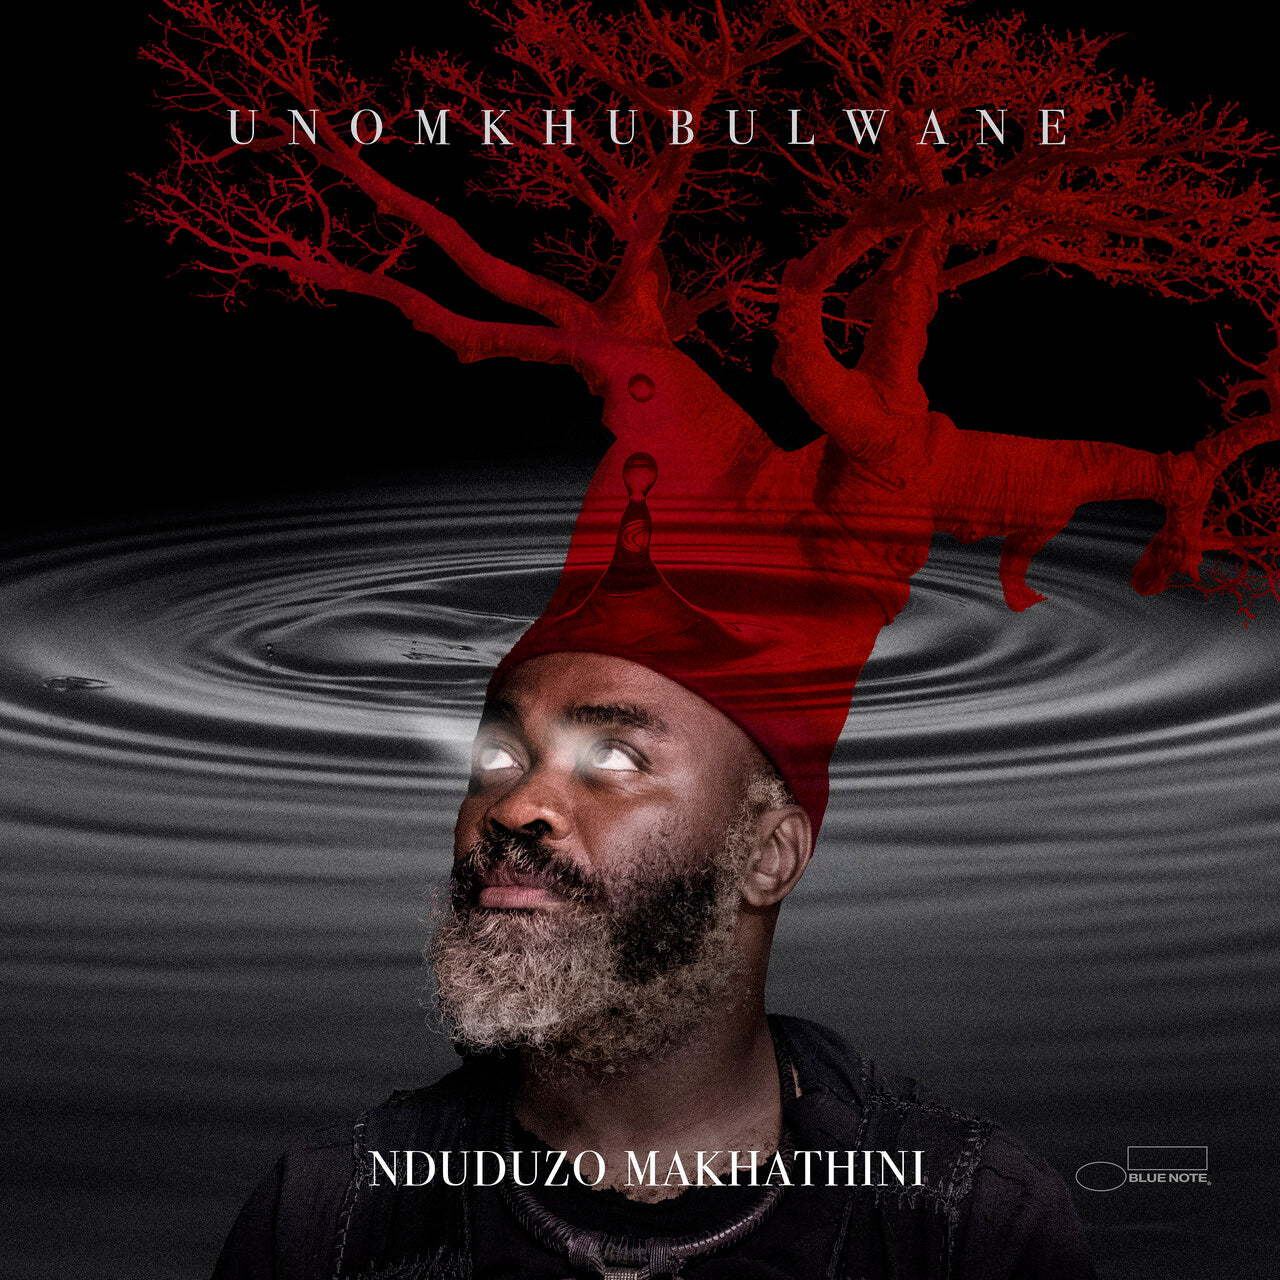 Nduduzo Makhathini - uNomkhubulwane: Vinyl LP